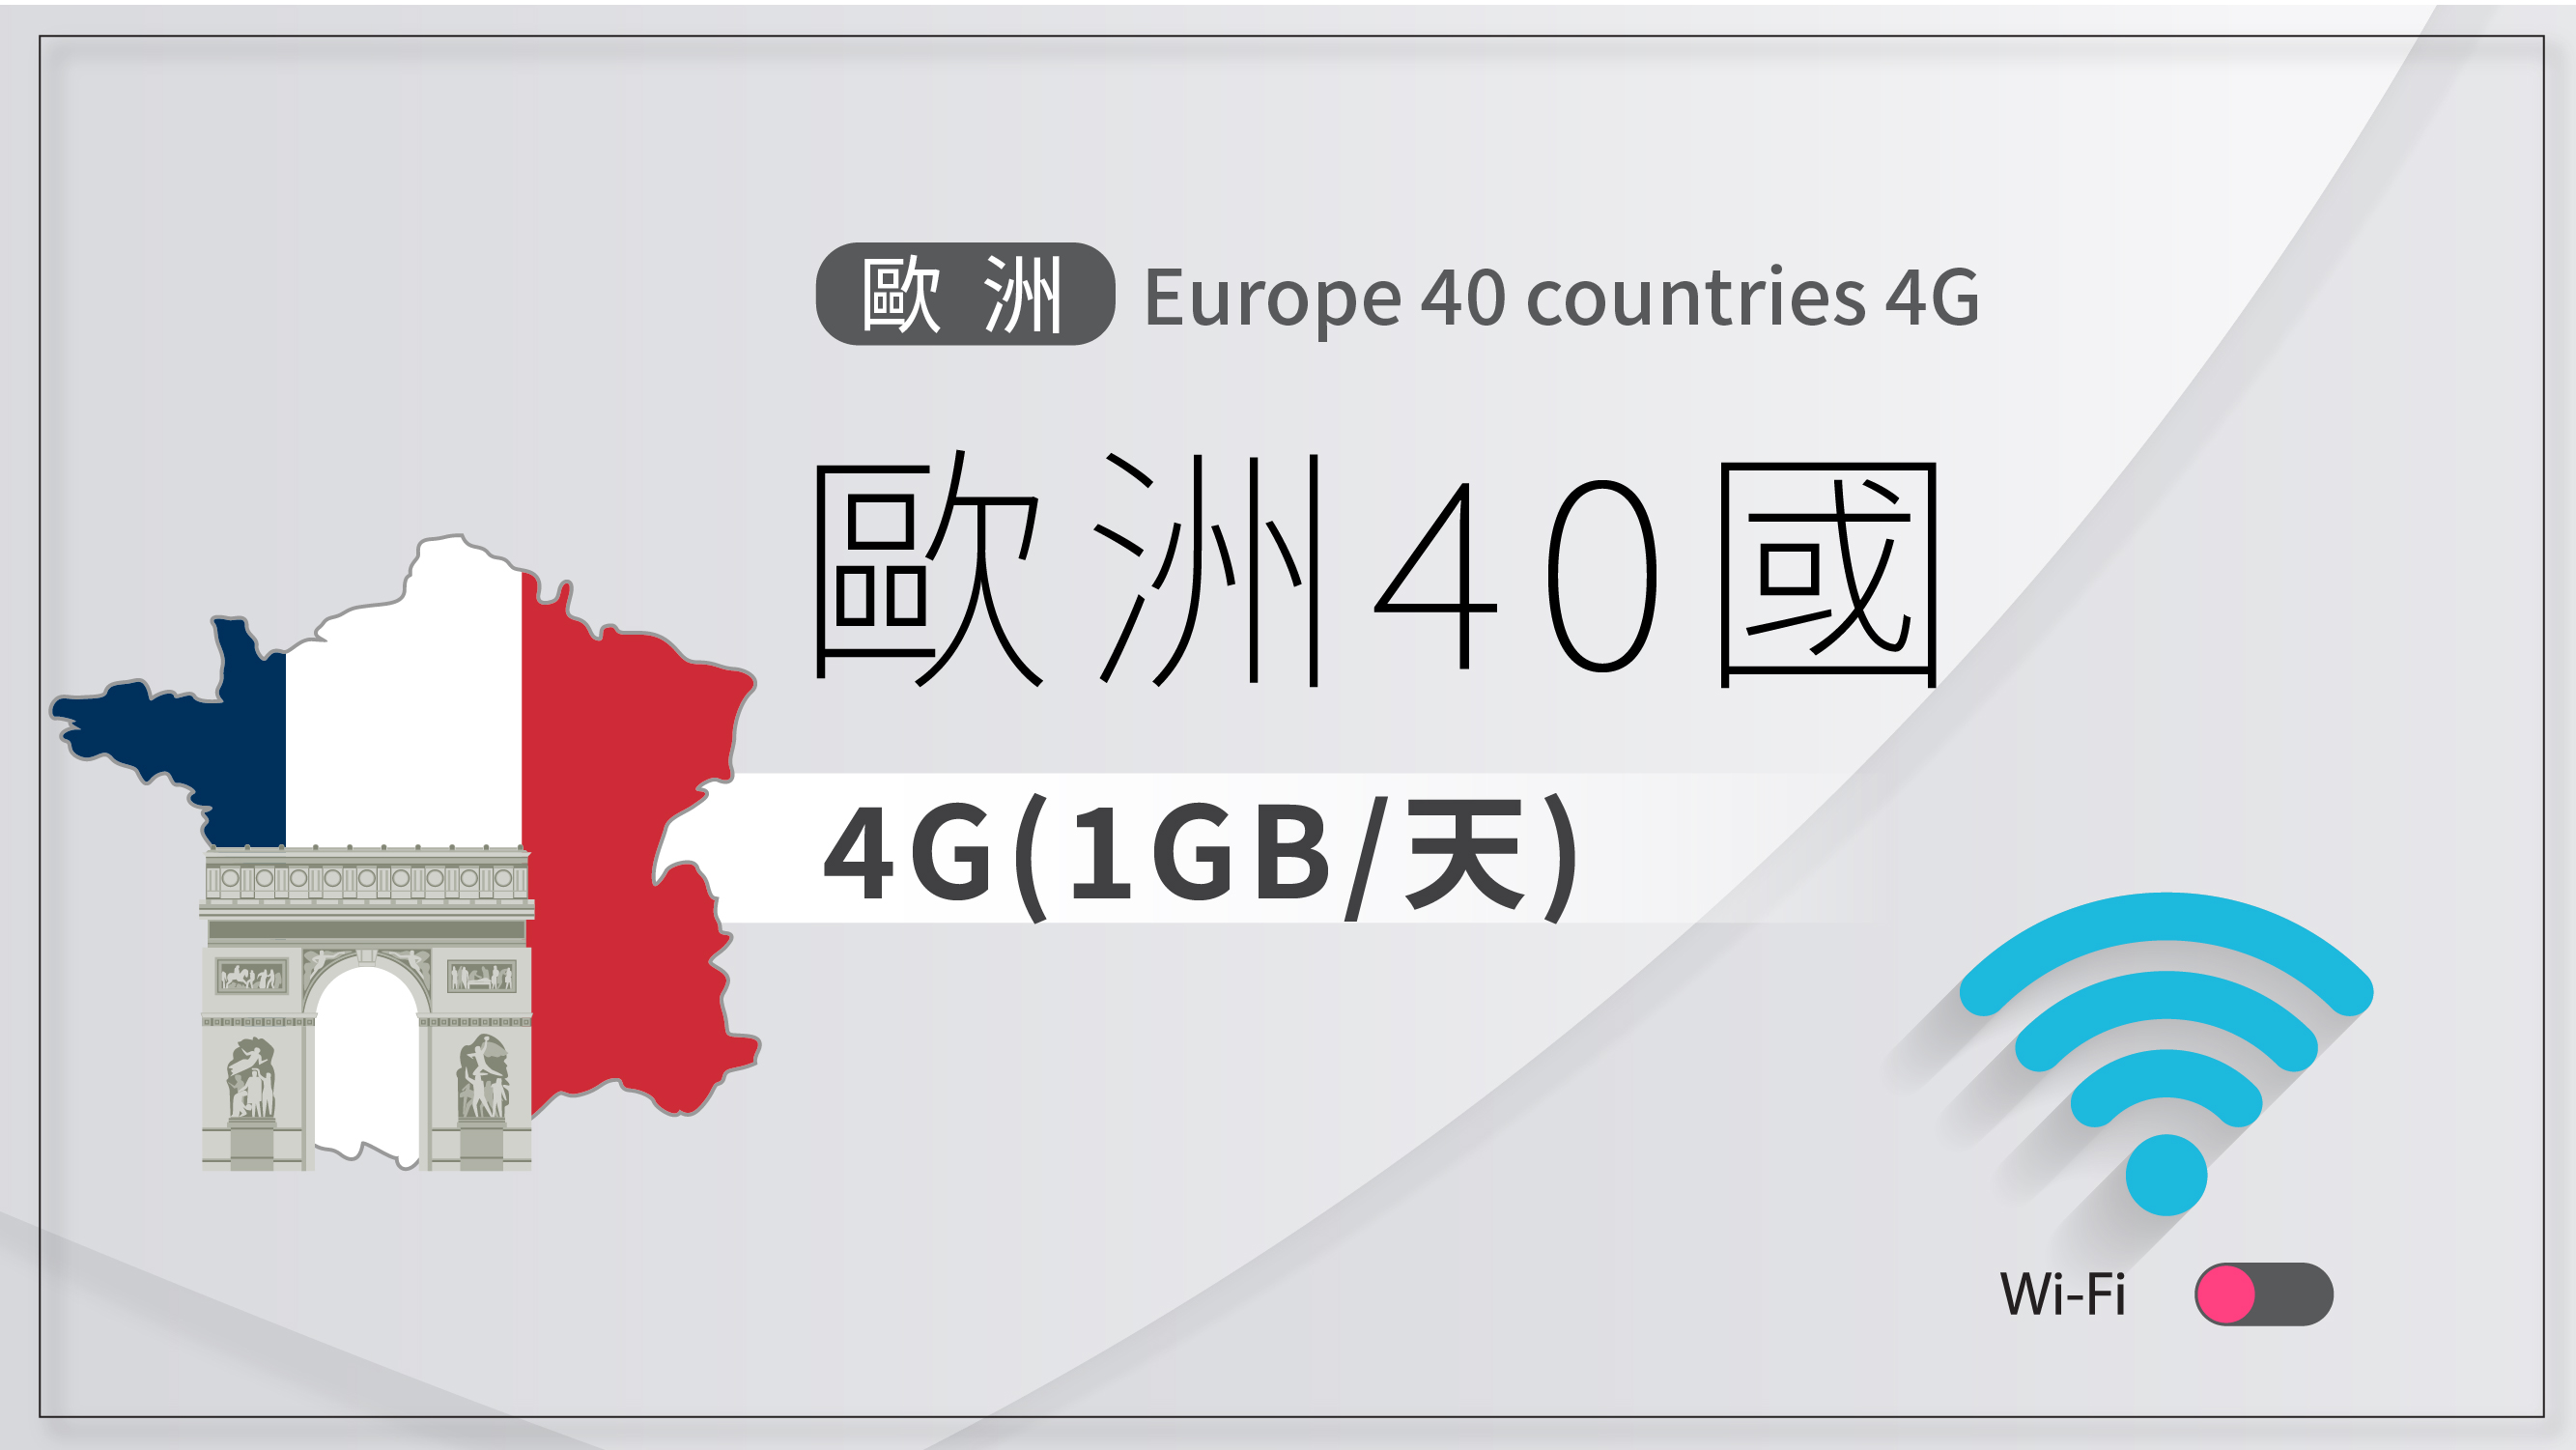 NEXT WIFI_Europe 40 countries 4G